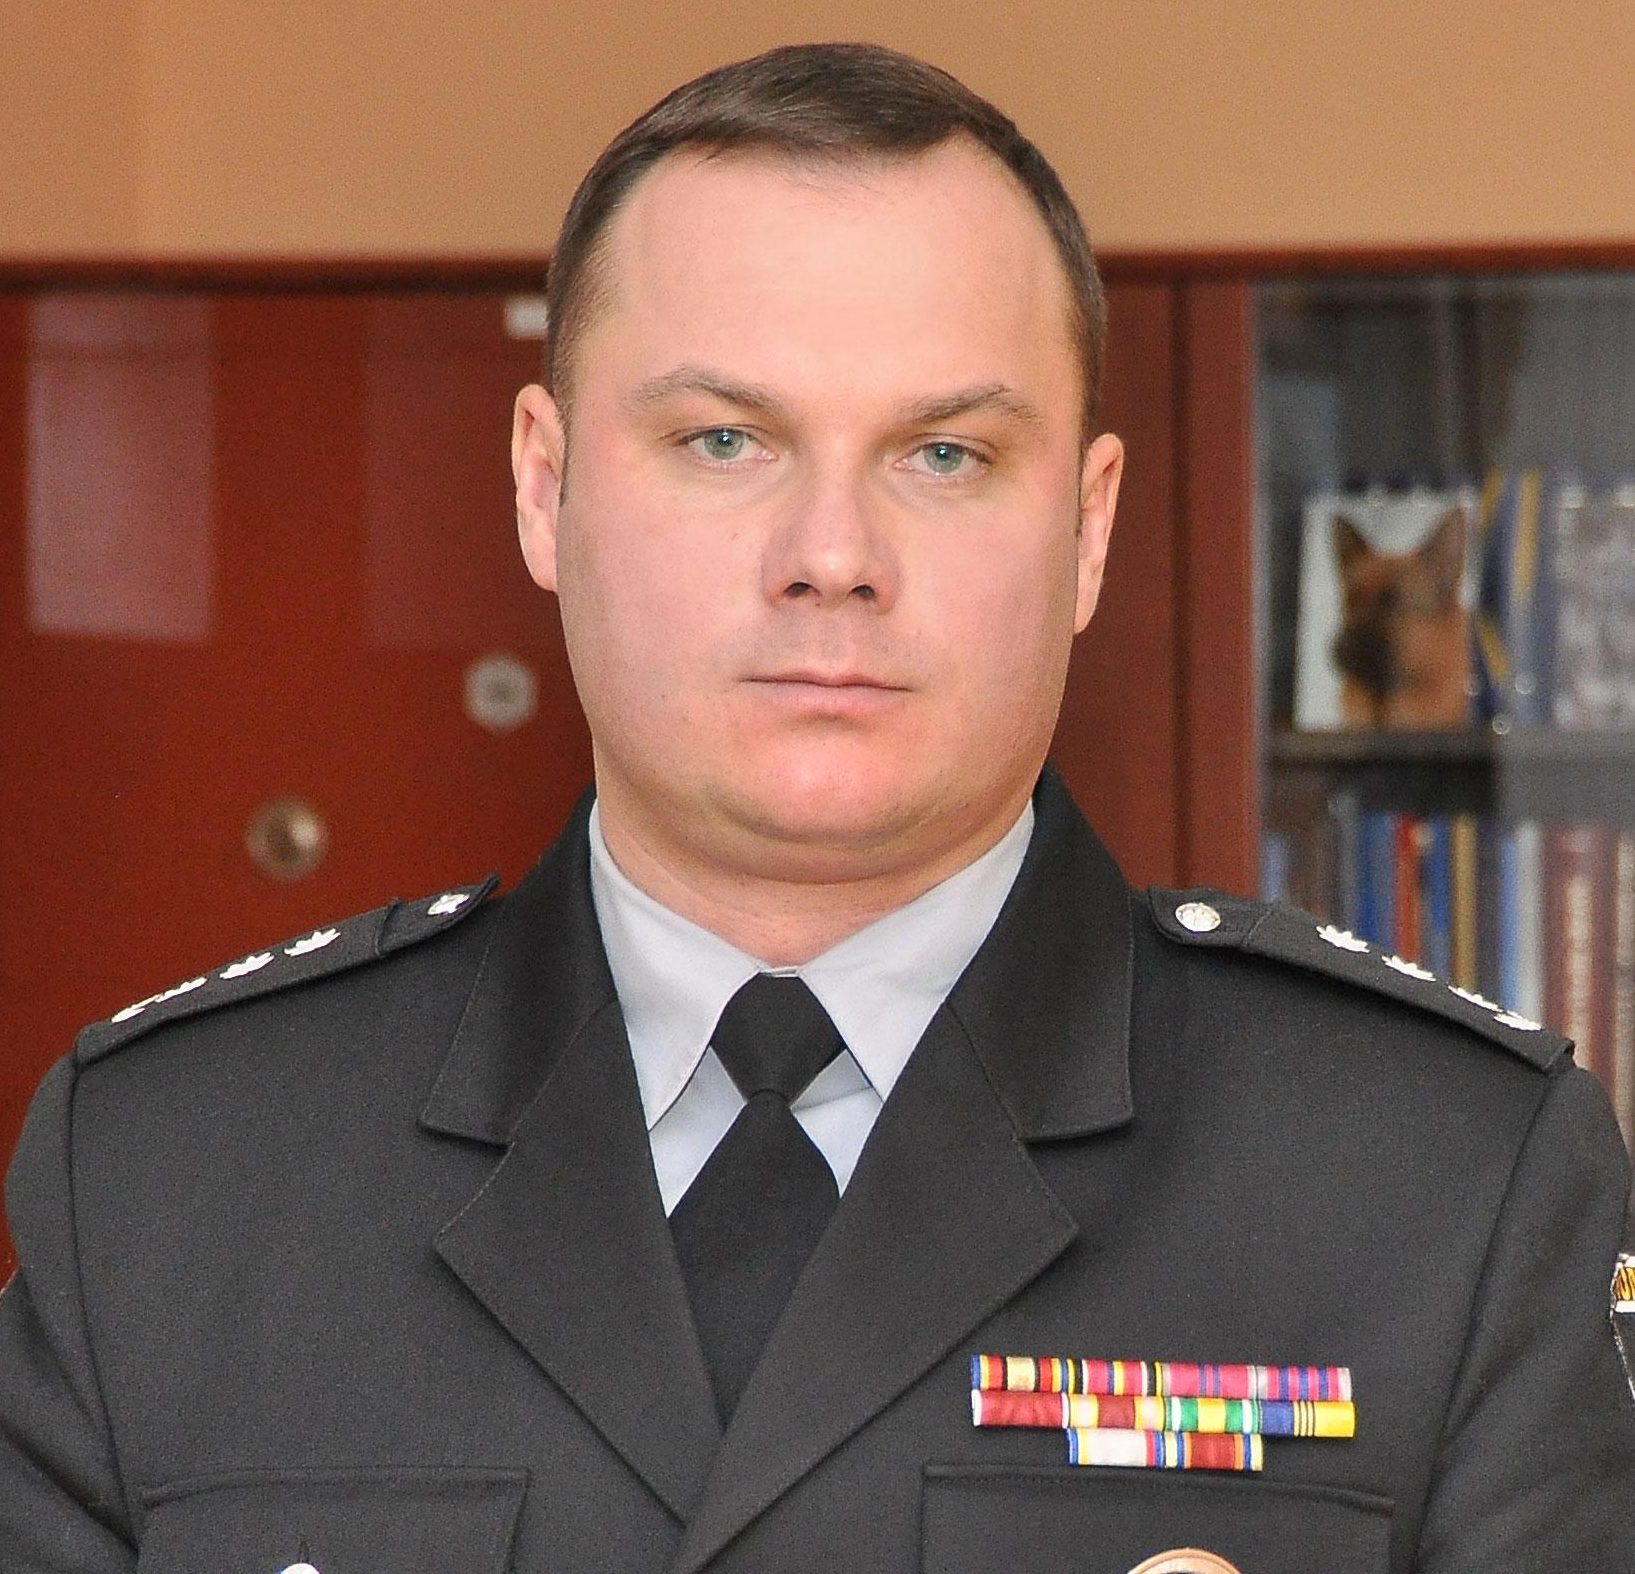 Новым главой полиции Киева назначат Ивана Выговского — СМИ